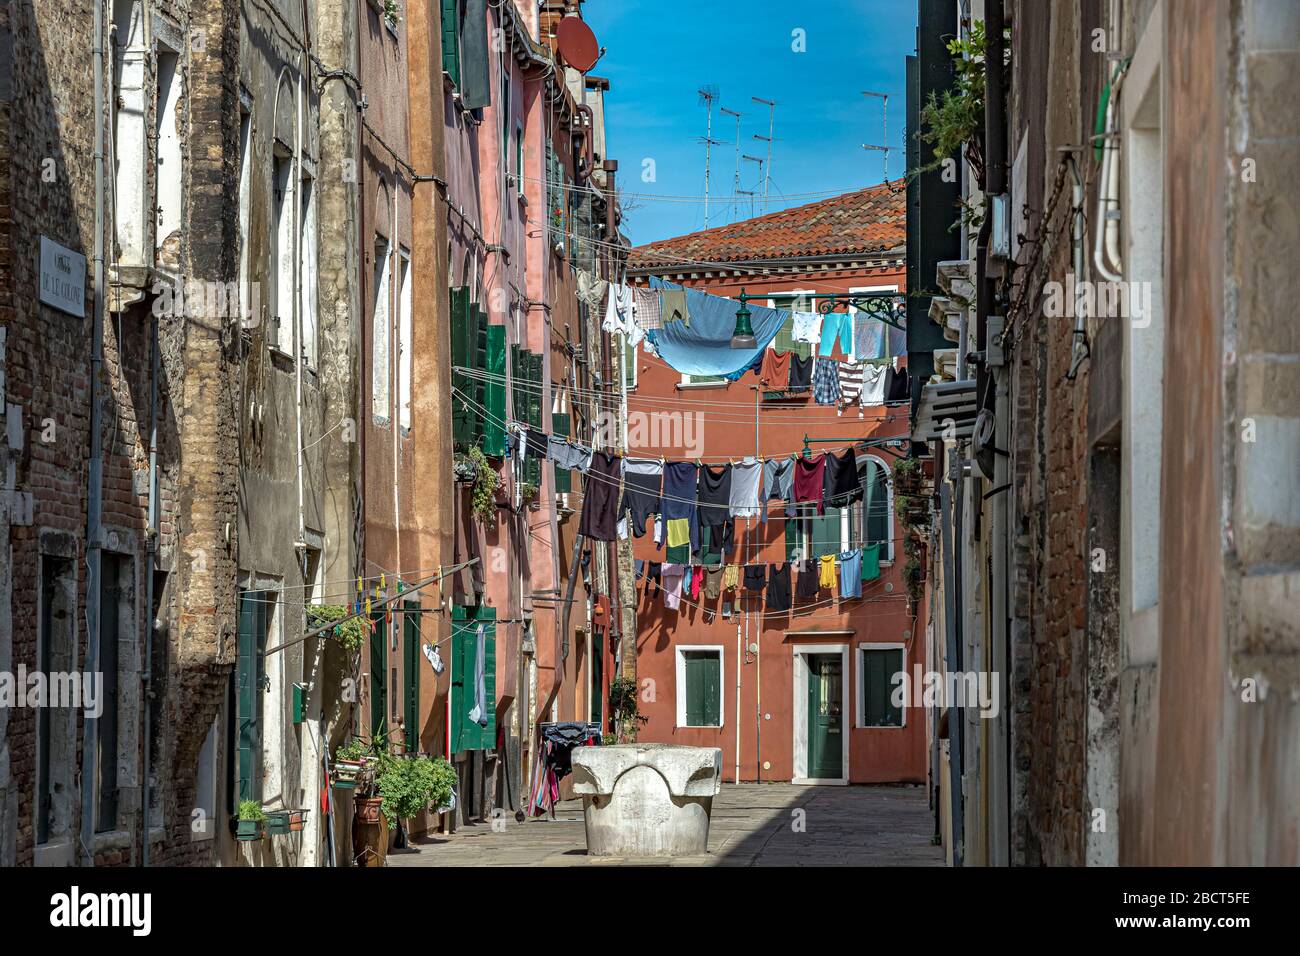 Lavaggio appeso ad asciugare su linea di lavaggio strung tra case in Corte Calle colonne un piccolo cortile a Venezia, Italia Foto Stock